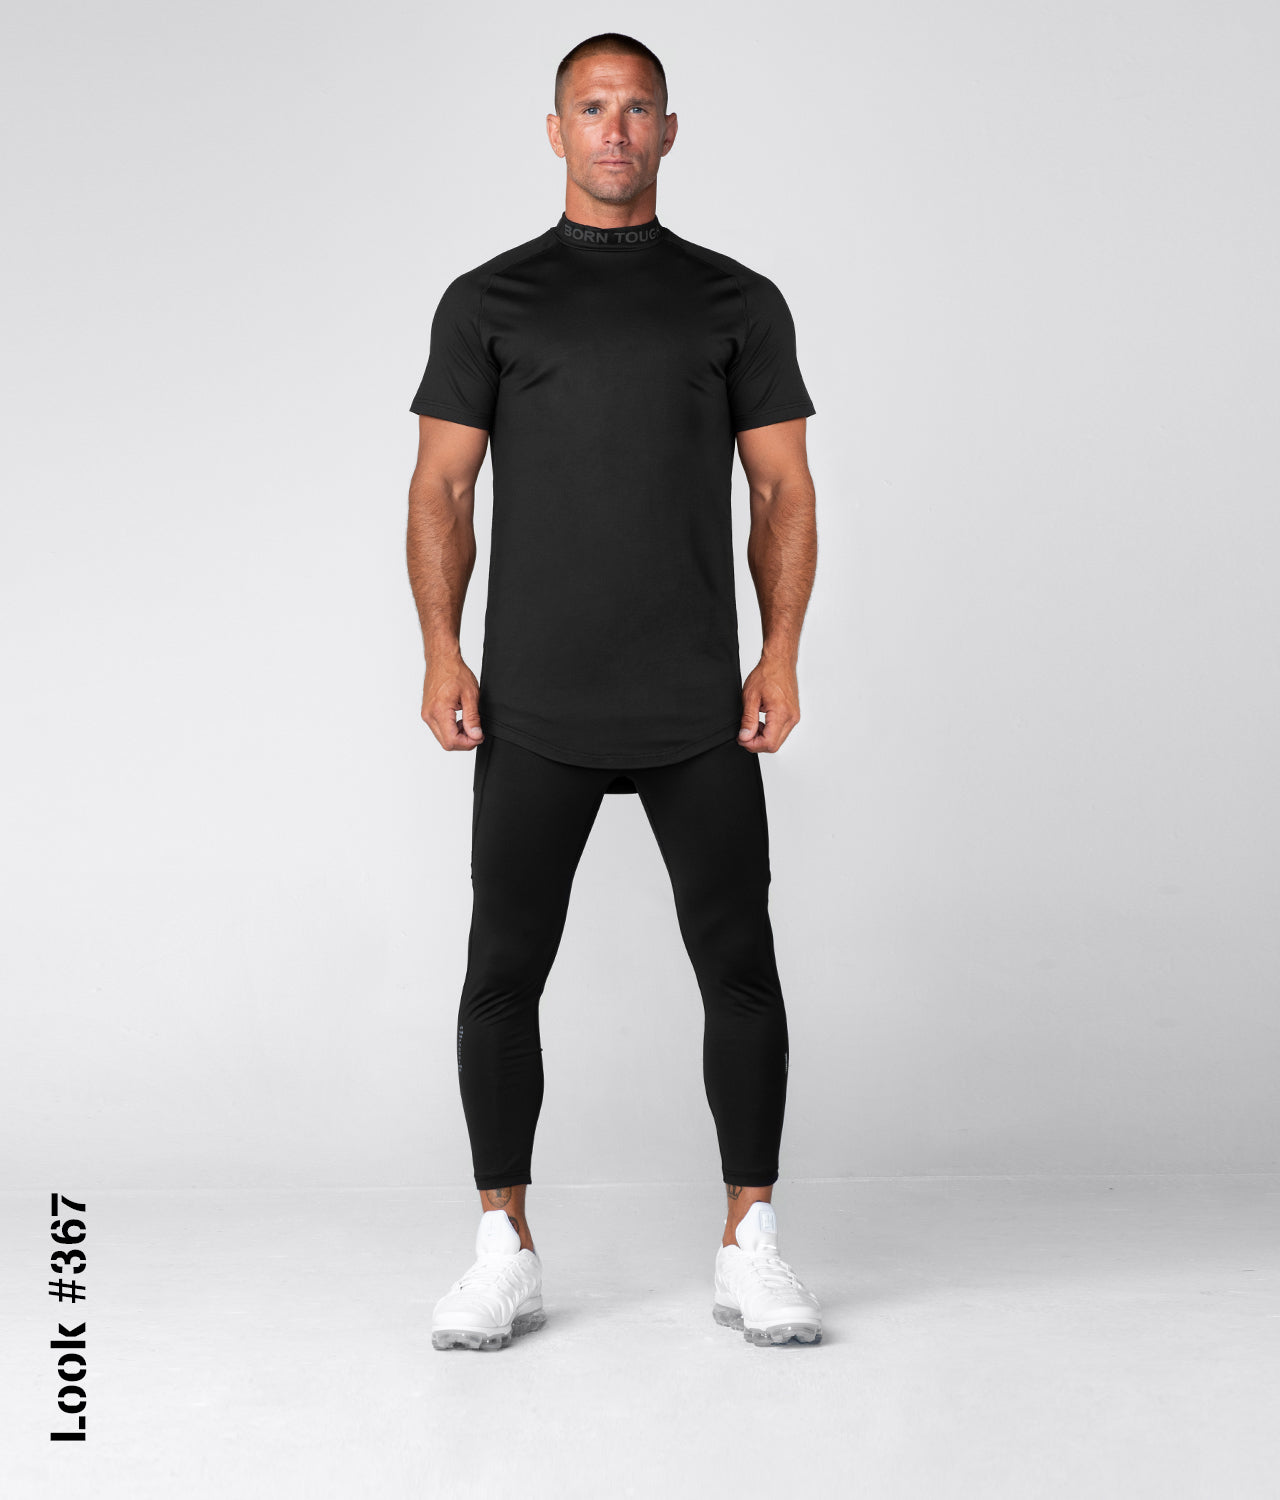 Download Born Tough Mock Neck Short Sleeve Compression Black Gym Workout Shirt For Men